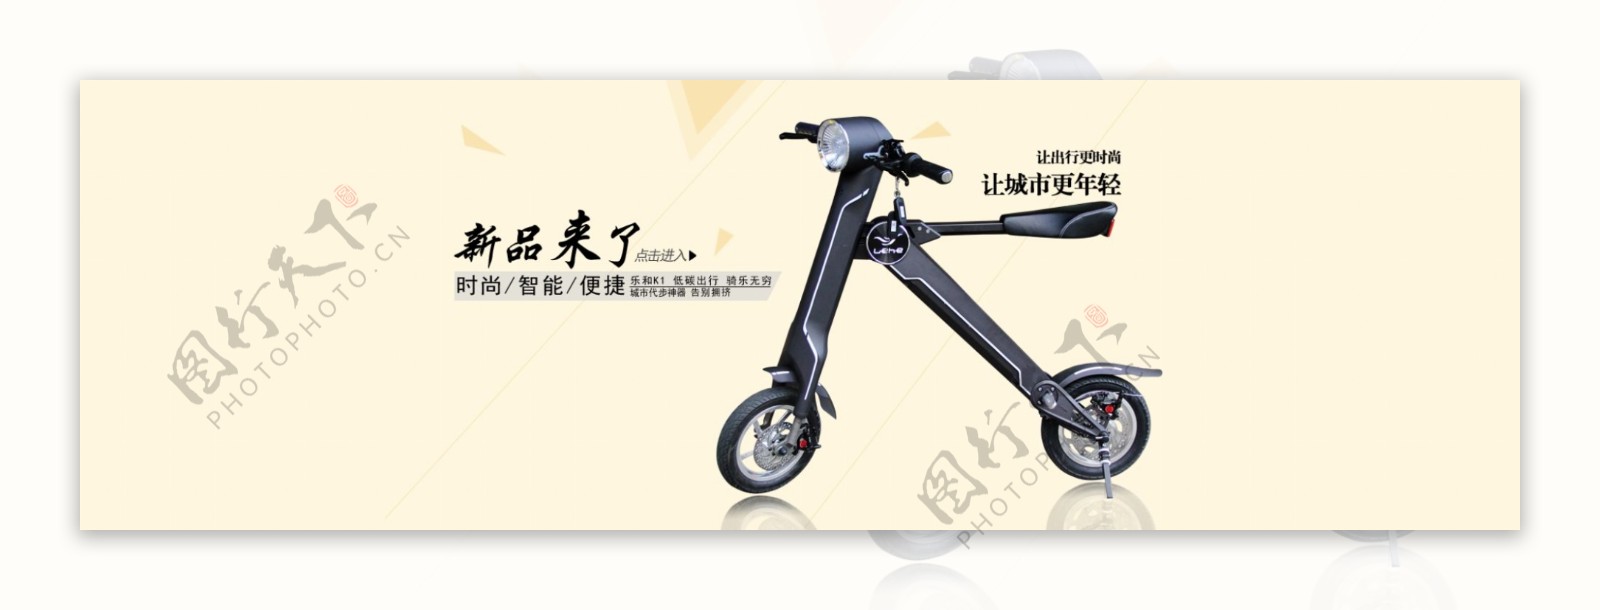 折叠电动车滑板车全屏海报设计